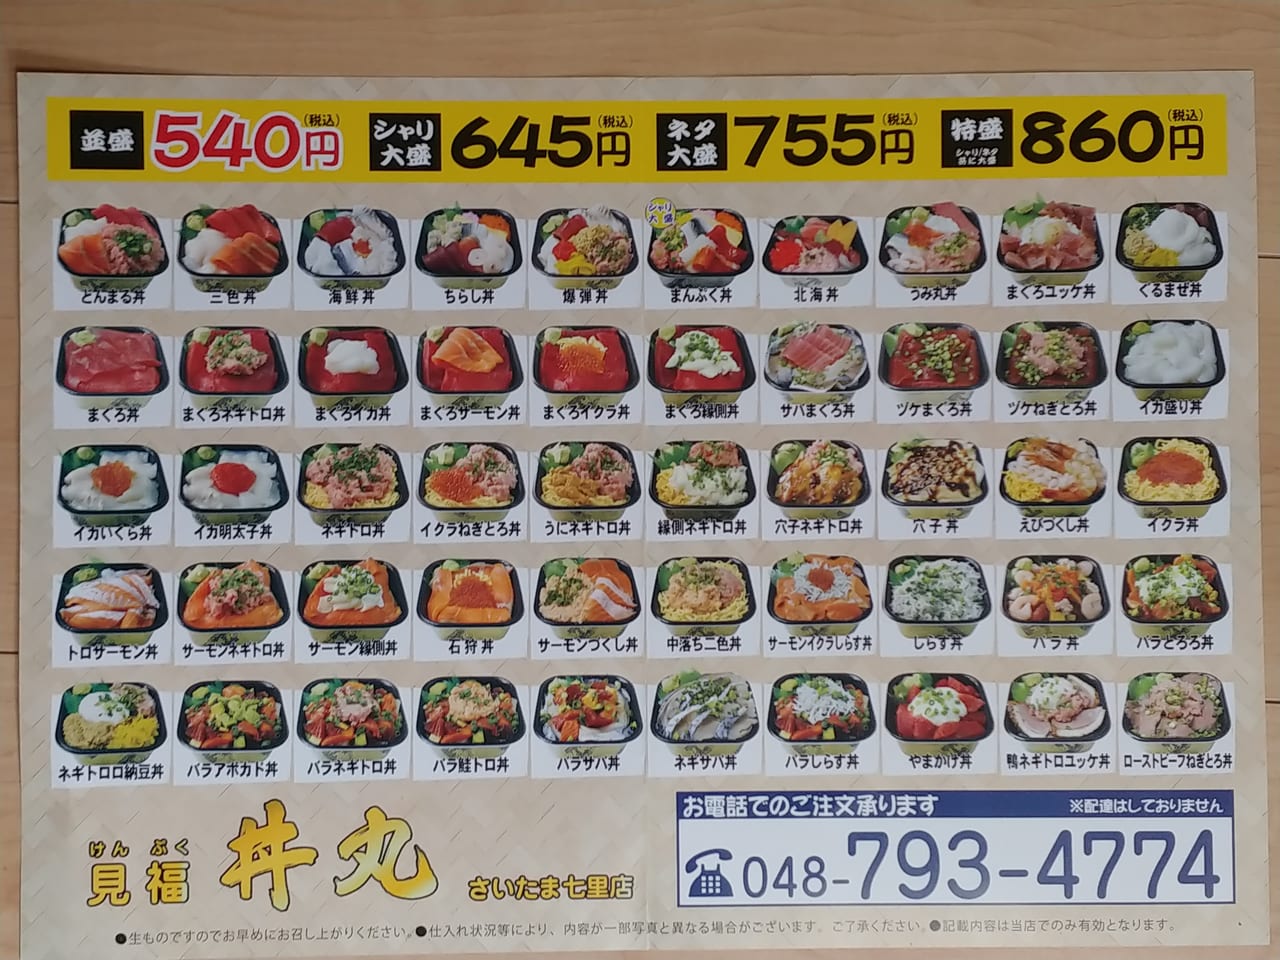 見福丼丸のメニュー表